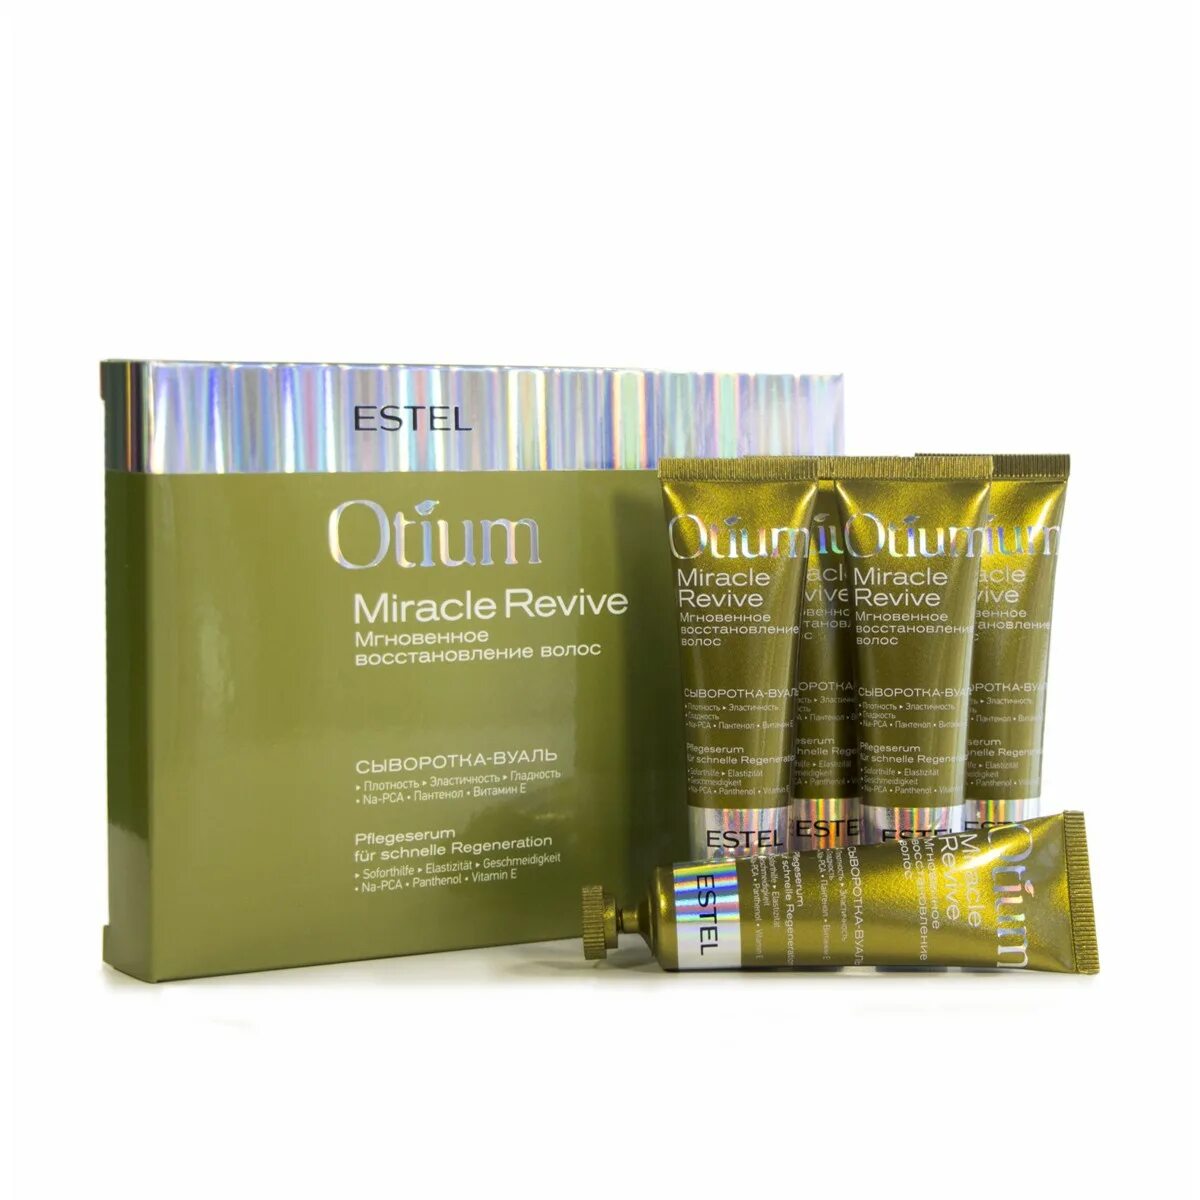 Otium Miracle Revive сыворотка вуаль. Estel маска для волос Otium Miracle Revive. Otium Miracle Revive для восстановления волос. Эстель Otium Miracle.